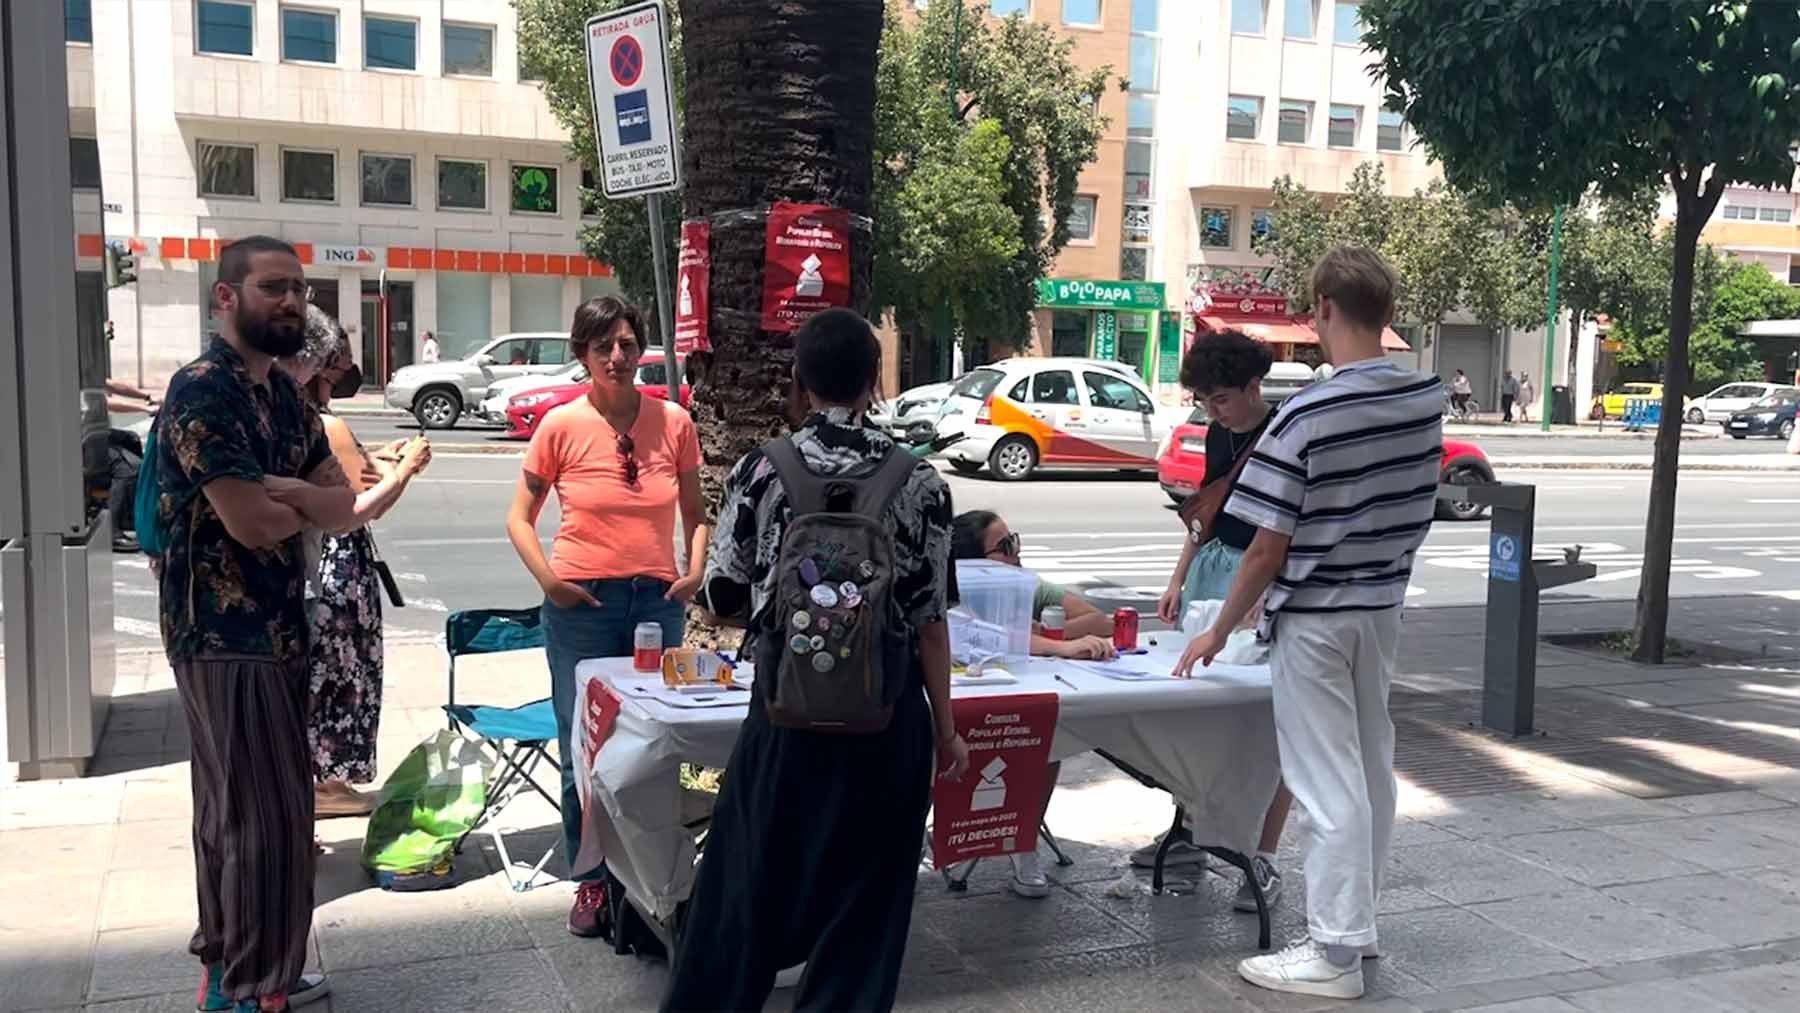 Ridículo total del referéndum fake en Sevilla: urnas vacías y hasta abandono de puestos.